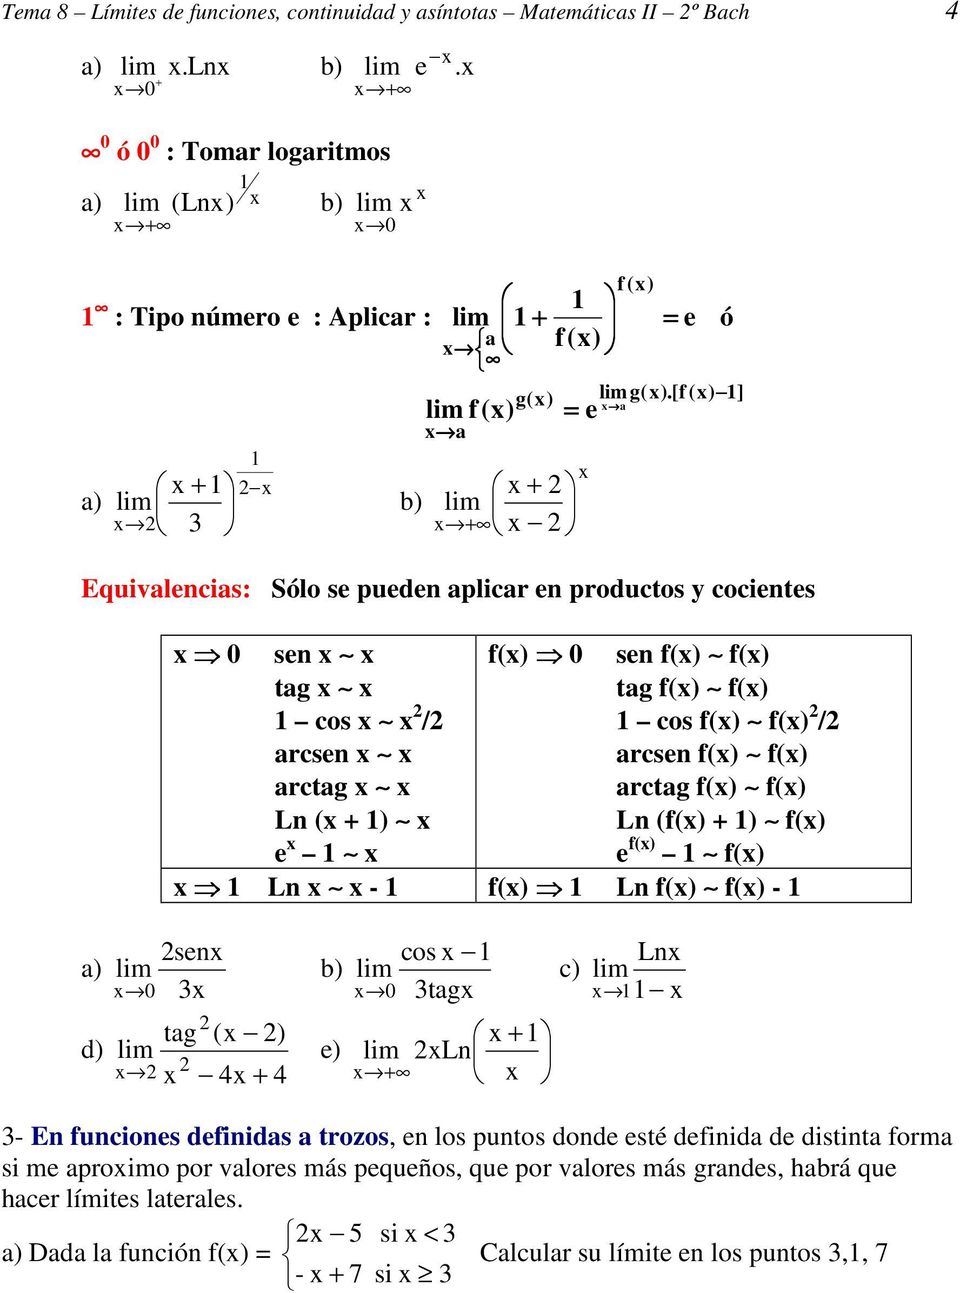 [f () 1] a e Equivalencias: Sólo se pueden aplicar en productos y cocientes 0 sen tag 1 cos / arcsen arctag Ln ( + 1) e 1 f() 0 sen f() f() tag f() f() 1 cos f() f() / arcsen f() f() arctag f() f()